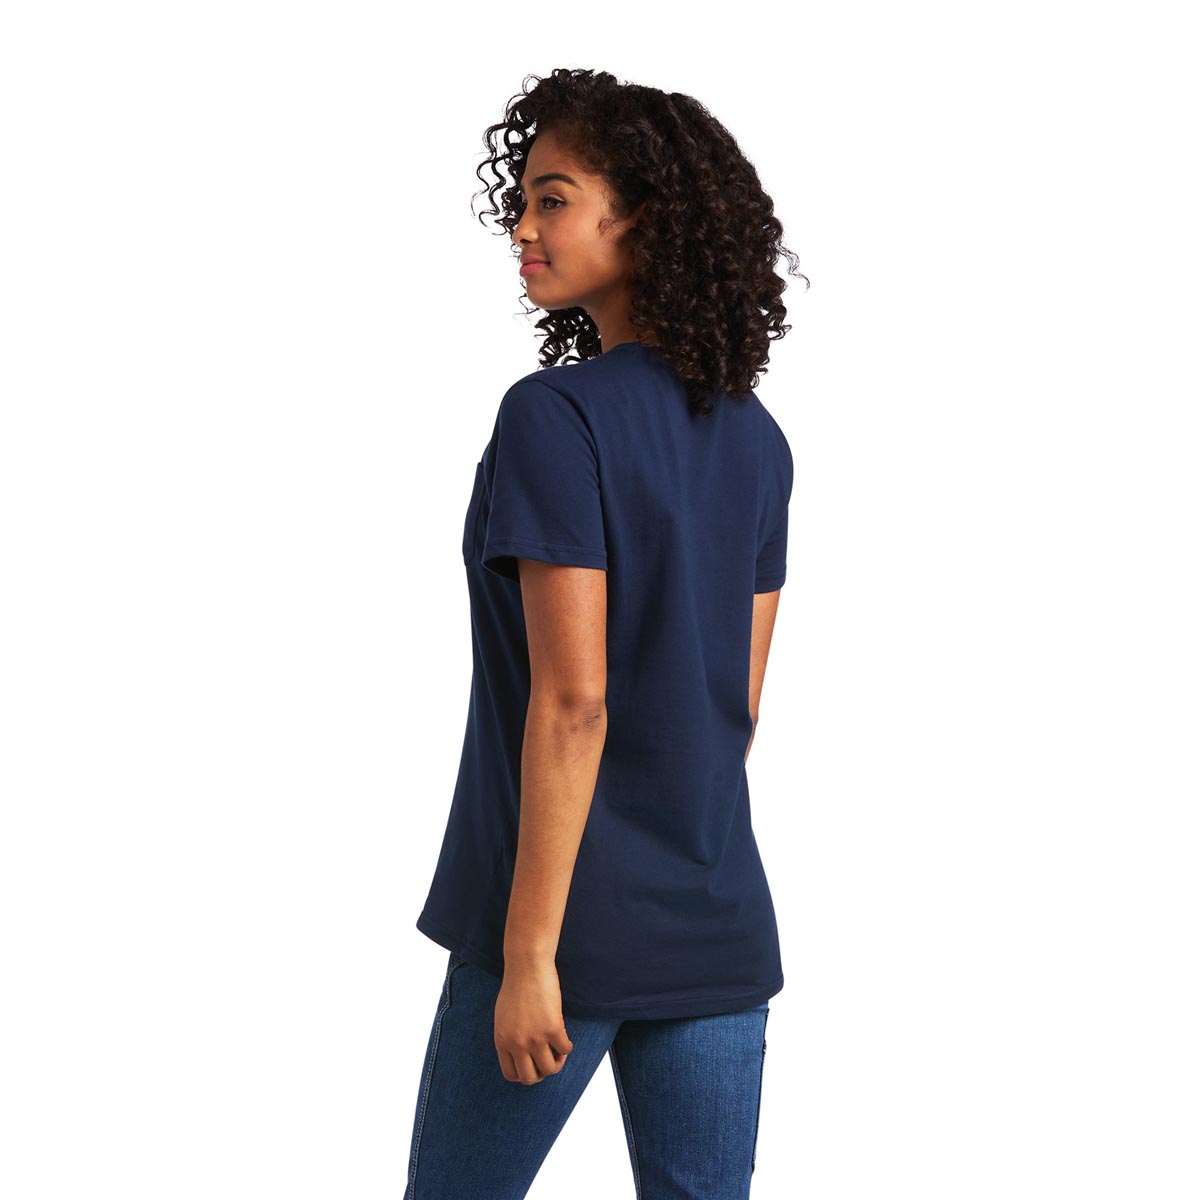 Ariat Women's Rebar Cotton Strong T-Shirt-Navy Eclipse